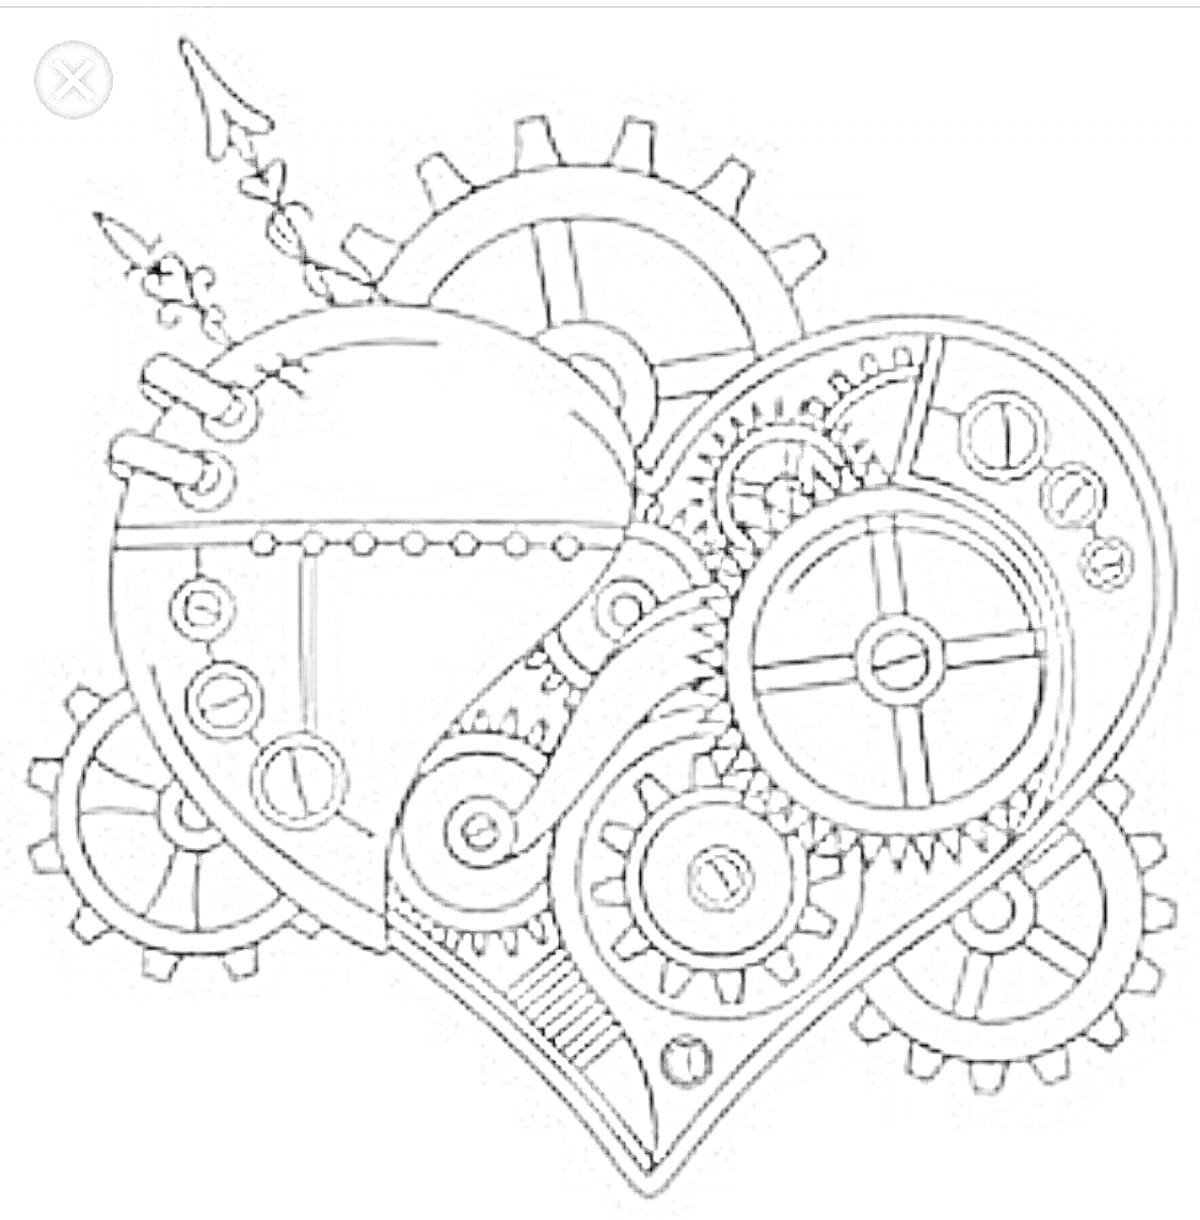 Раскраска Сердце с механизмами, включающими шестеренки, стрелы, трубки и болты